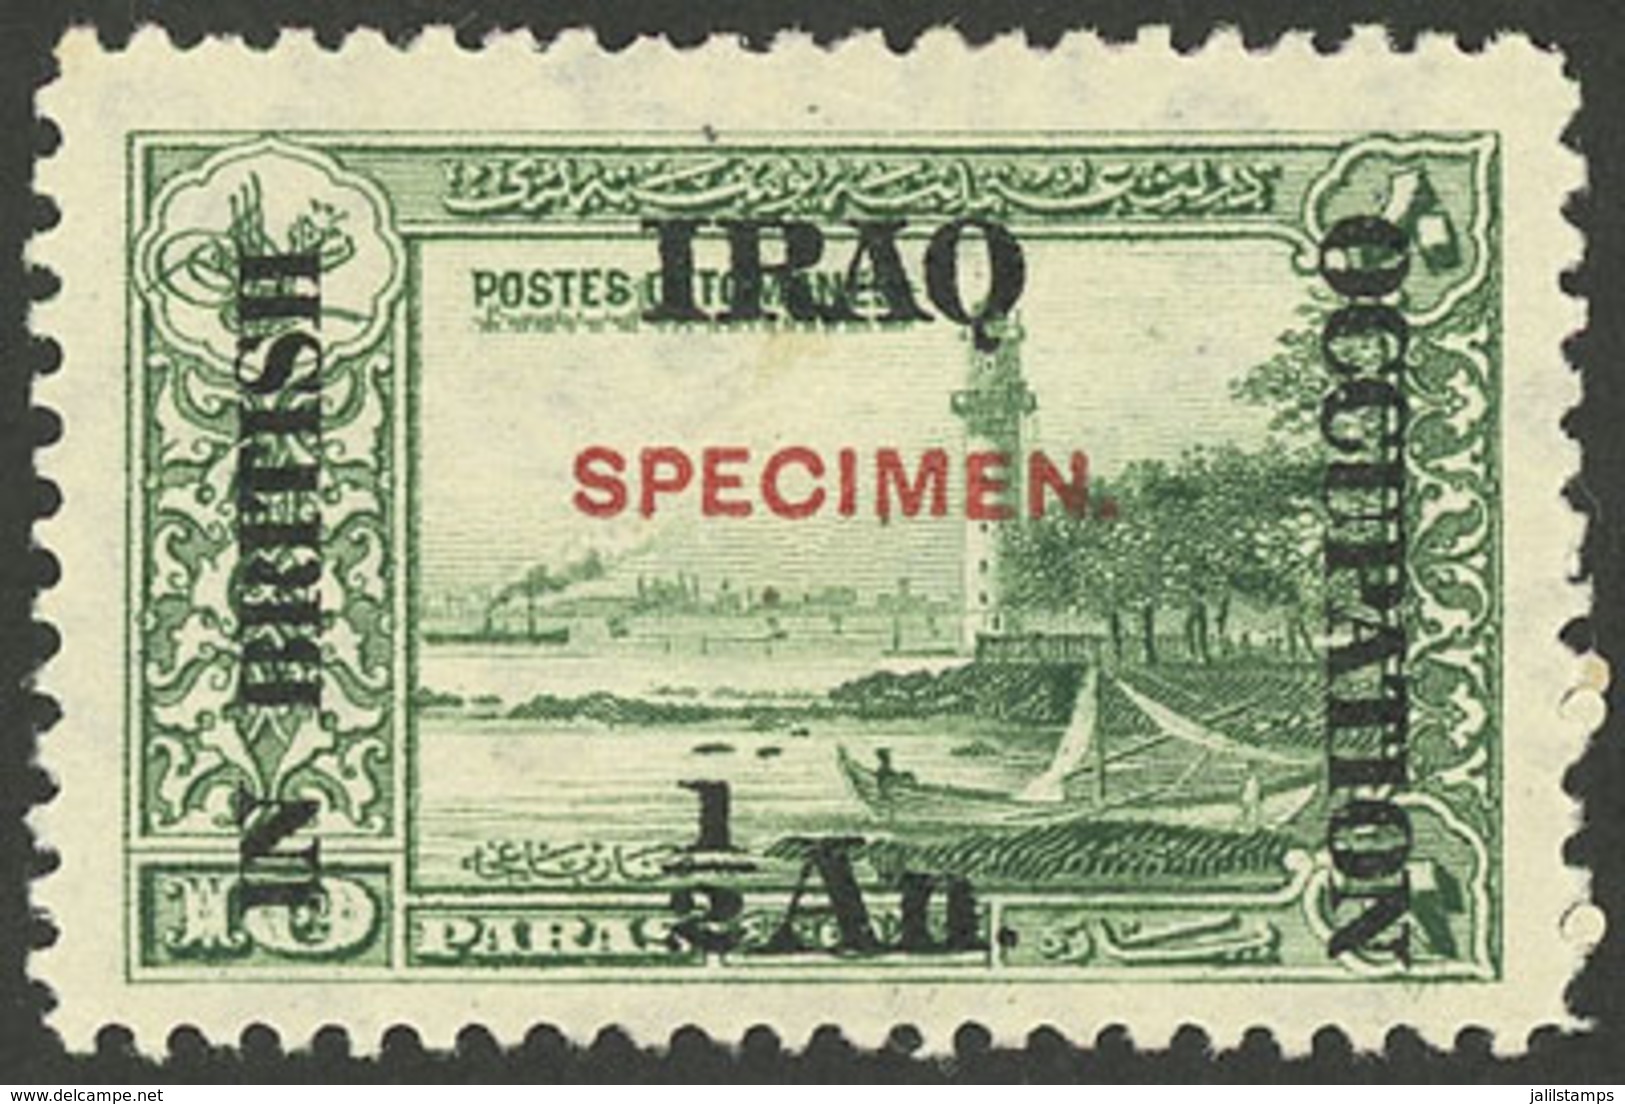 IRAQ: Sc.N29, With SPECIMEN Ovpt., Mint Original Gum, VF Quality! - Iraq